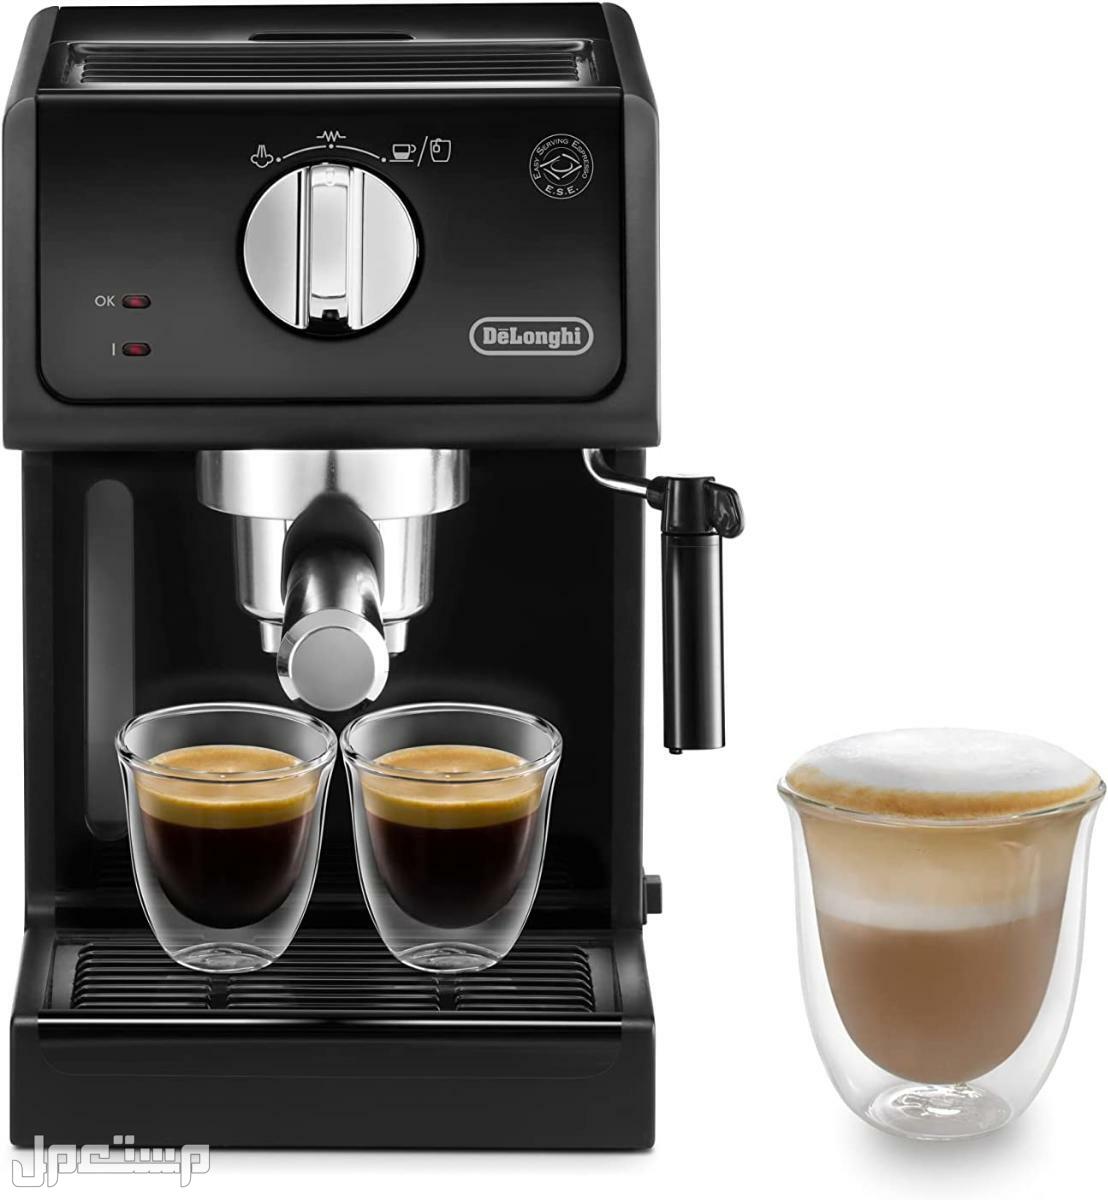 عيوب ومميزات ومواصفات وسعر ماكينة قهوة ديلونجى ديديكا في الإمارات العربية المتحدة لماذا عليك شراء ماكينة قهوة ديلونجي ديديكا ؟